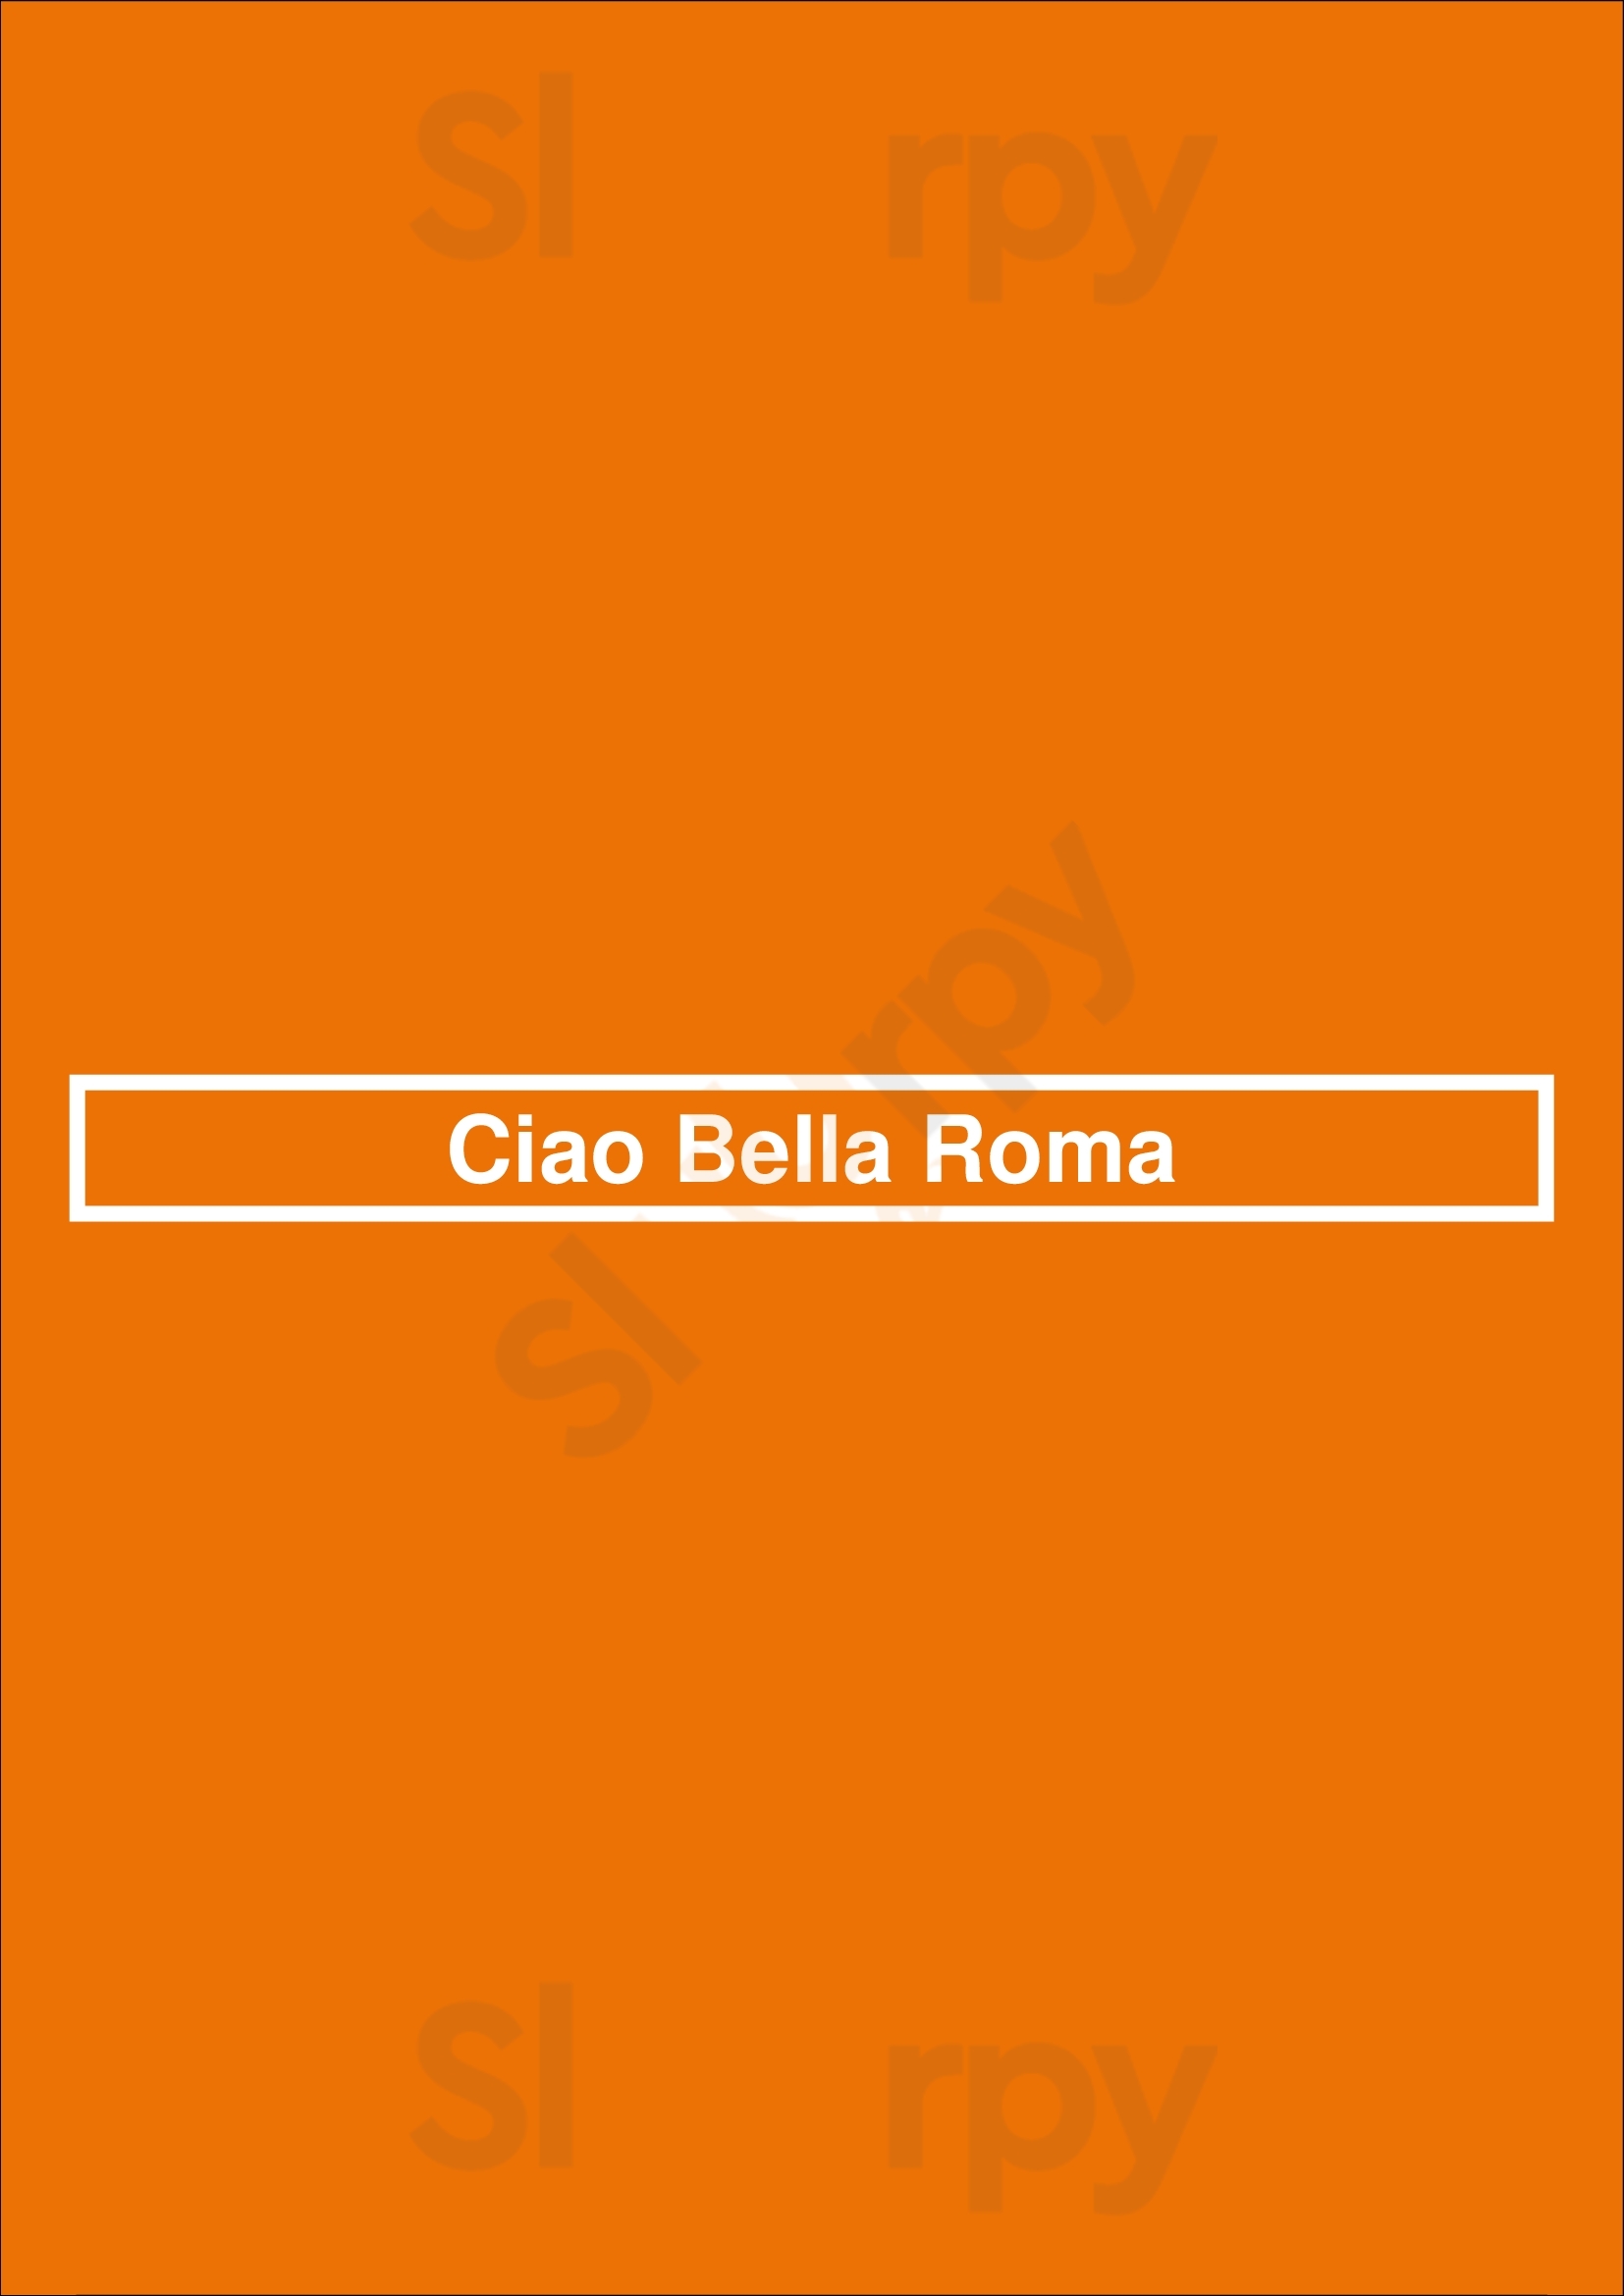 Ciao Bella Roma Dublin Menu - 1